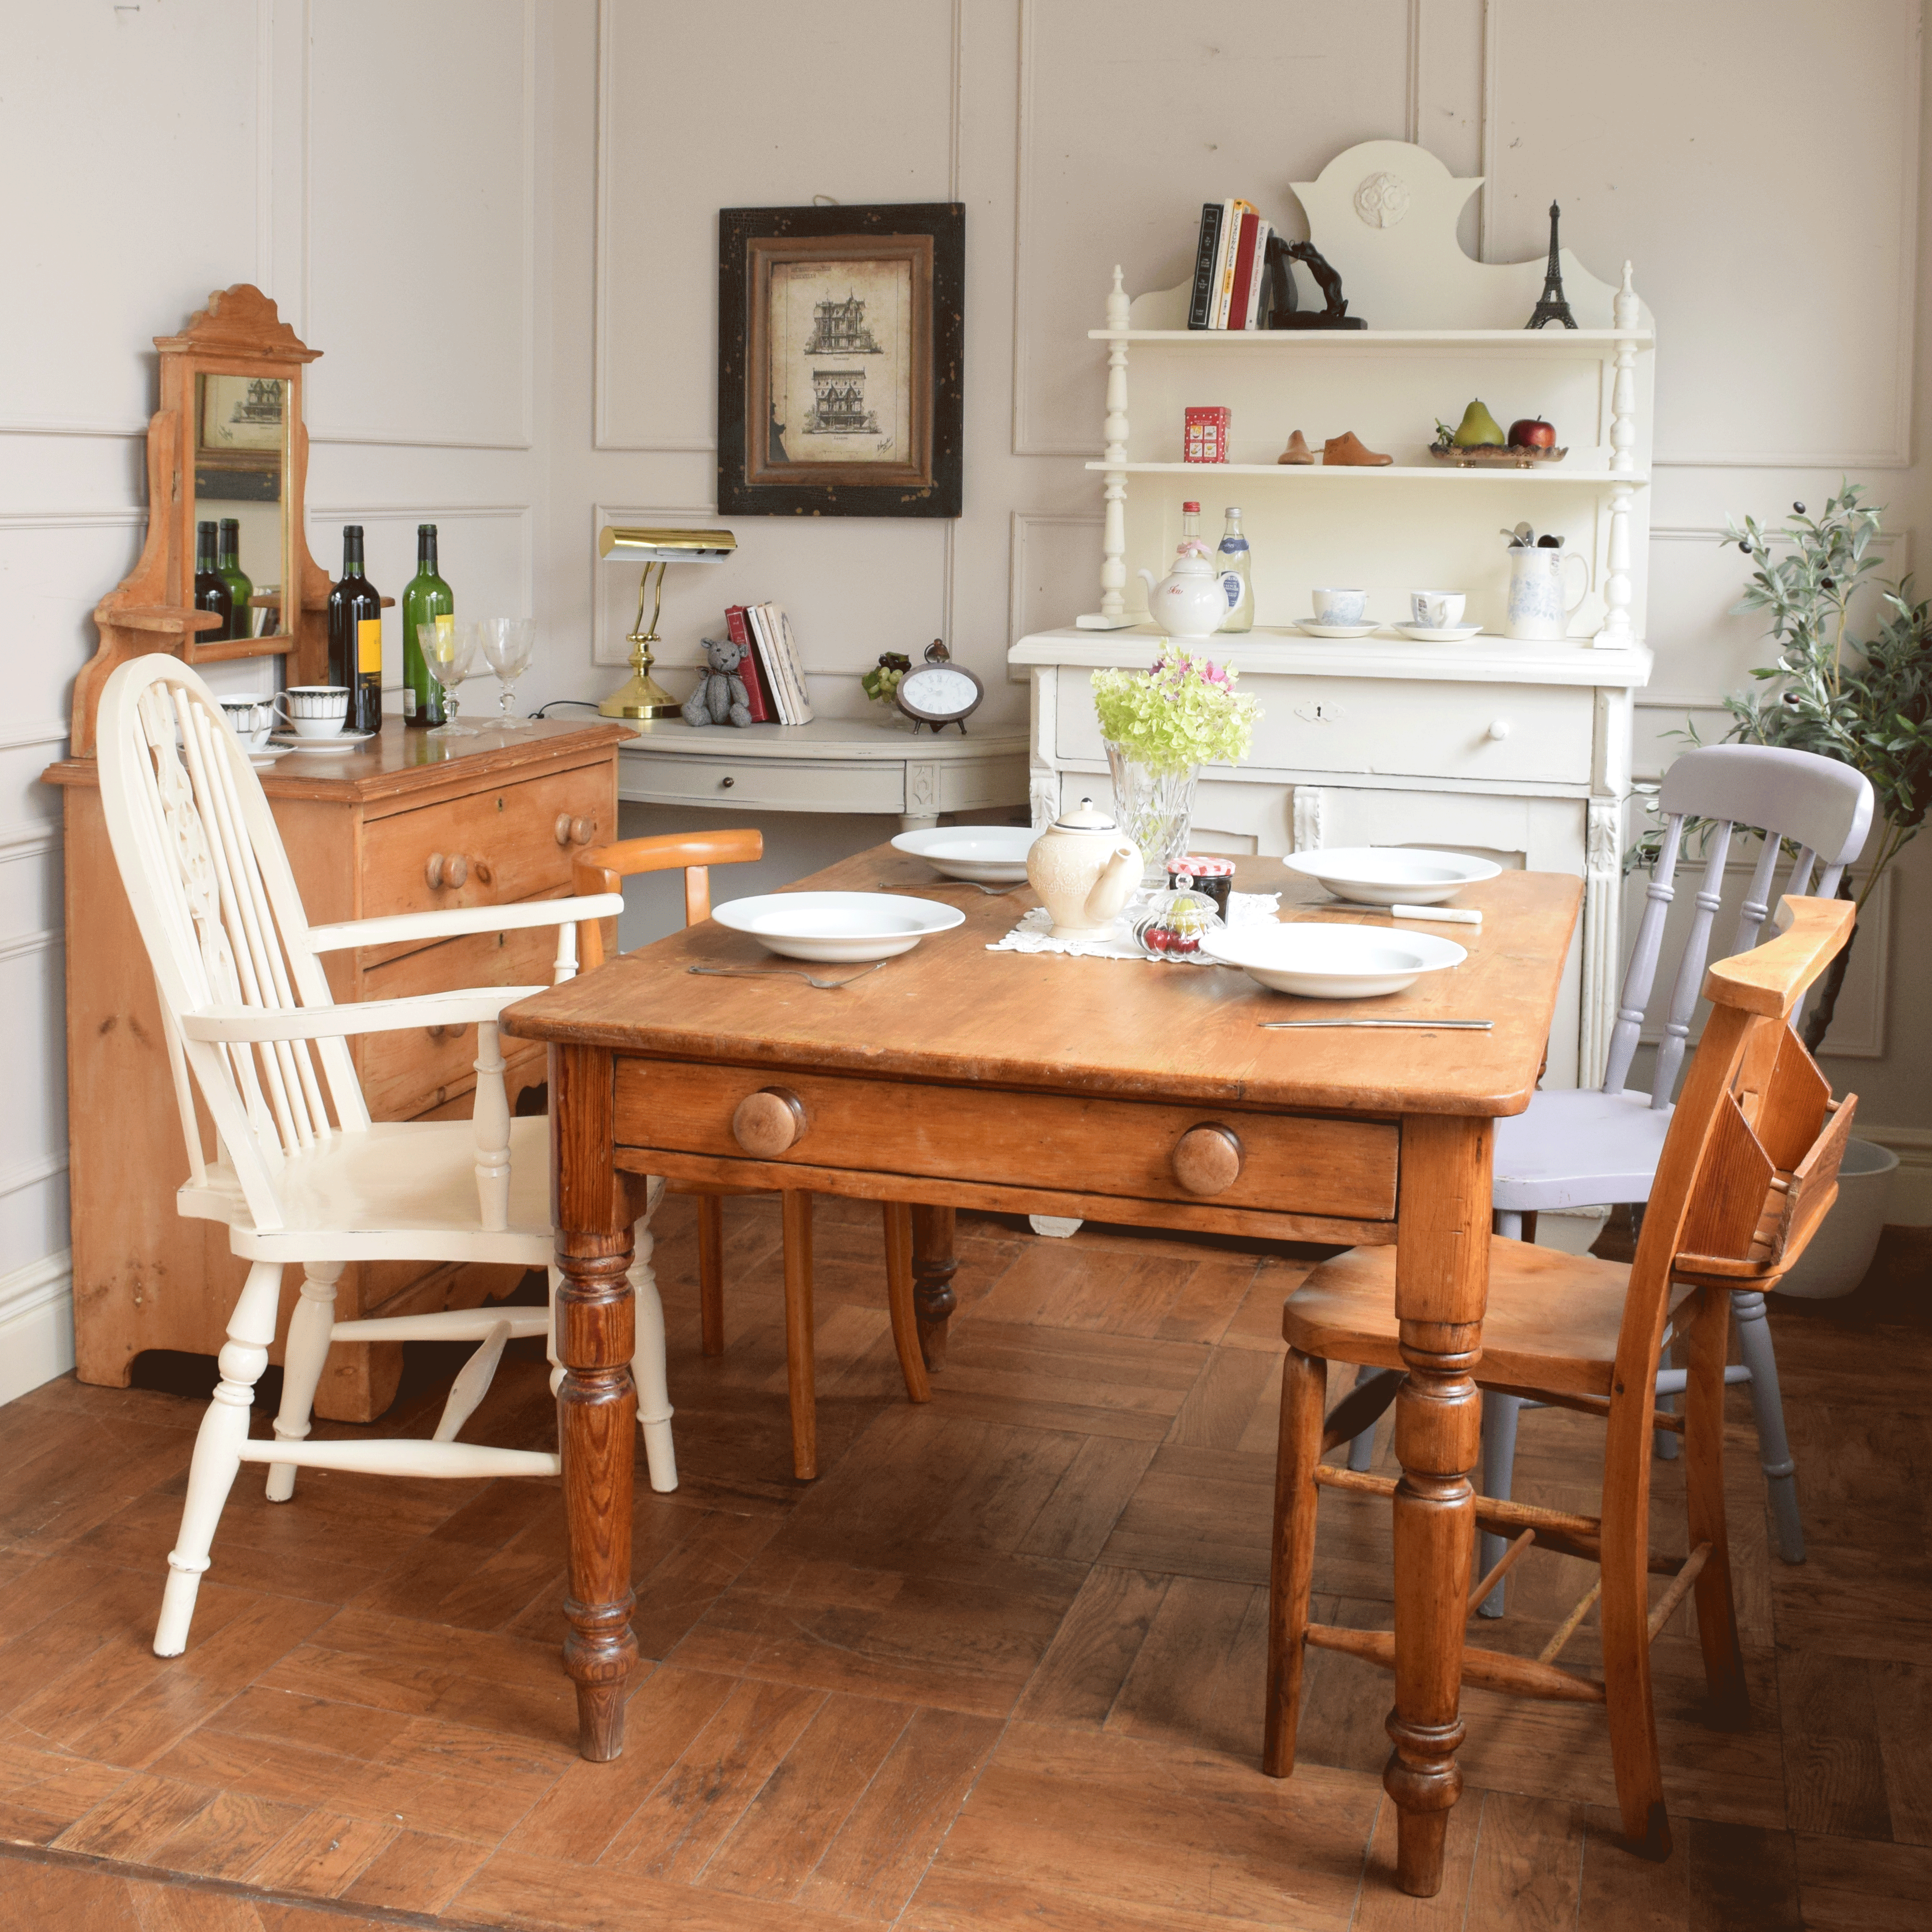 ナチュラルカントリーの | 暑い日に、クールな色の家具とほっこりおしゃべり食卓